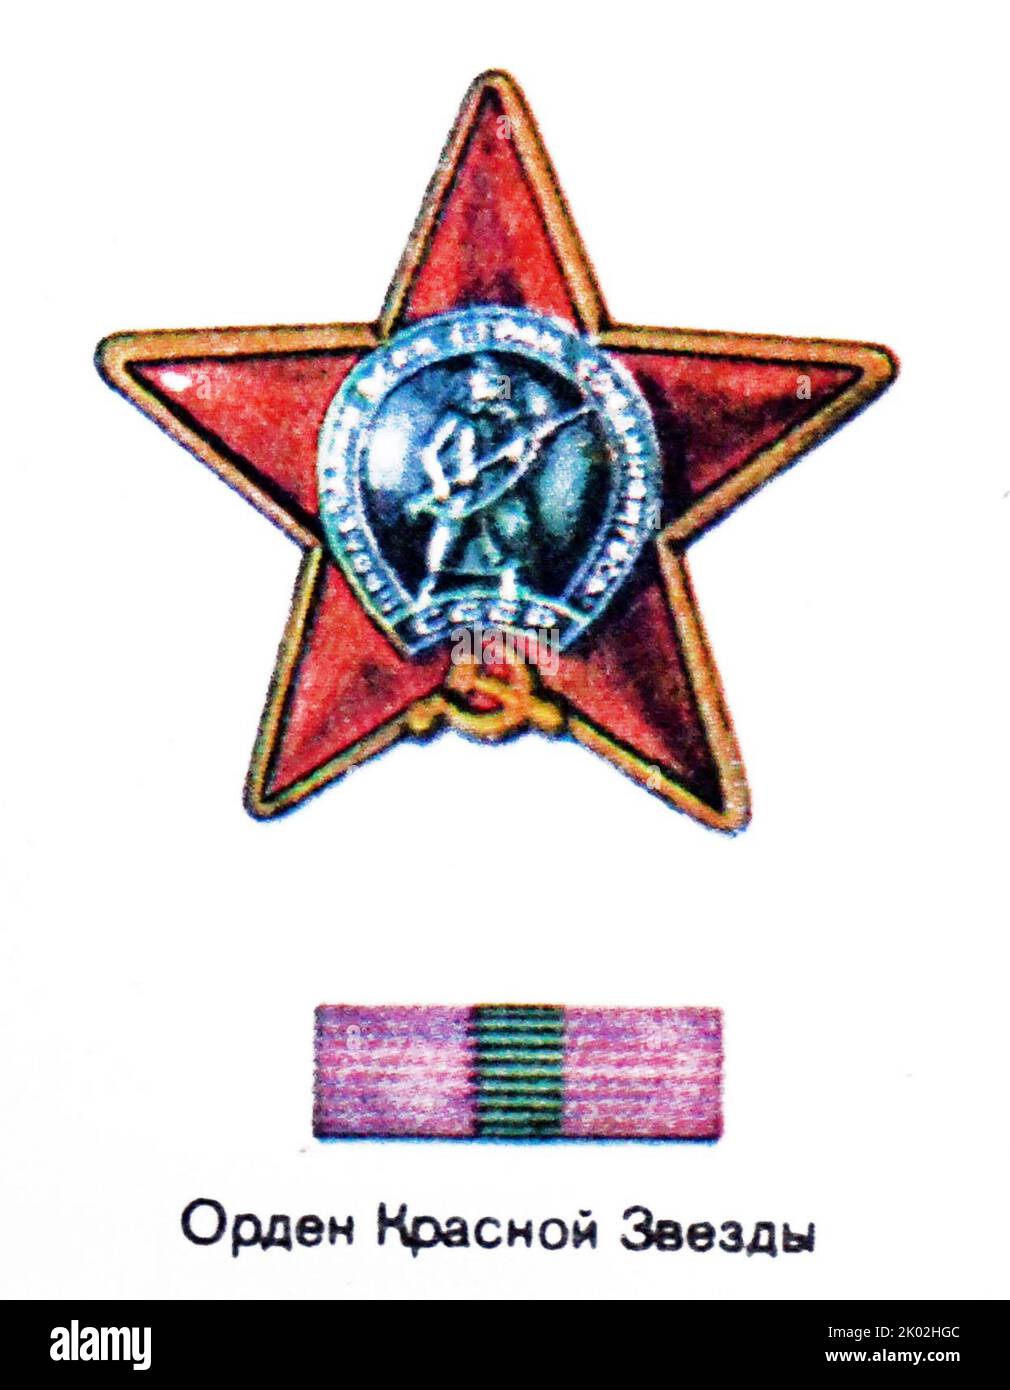 Der Orden des Roten Sterns war eine militärische Dekoration der Sowjetunion. Sie wurde durch Dekret des Präsidiums des Obersten Sowjets der UdSSR vom 6. April 1930 errichtet Stockfoto